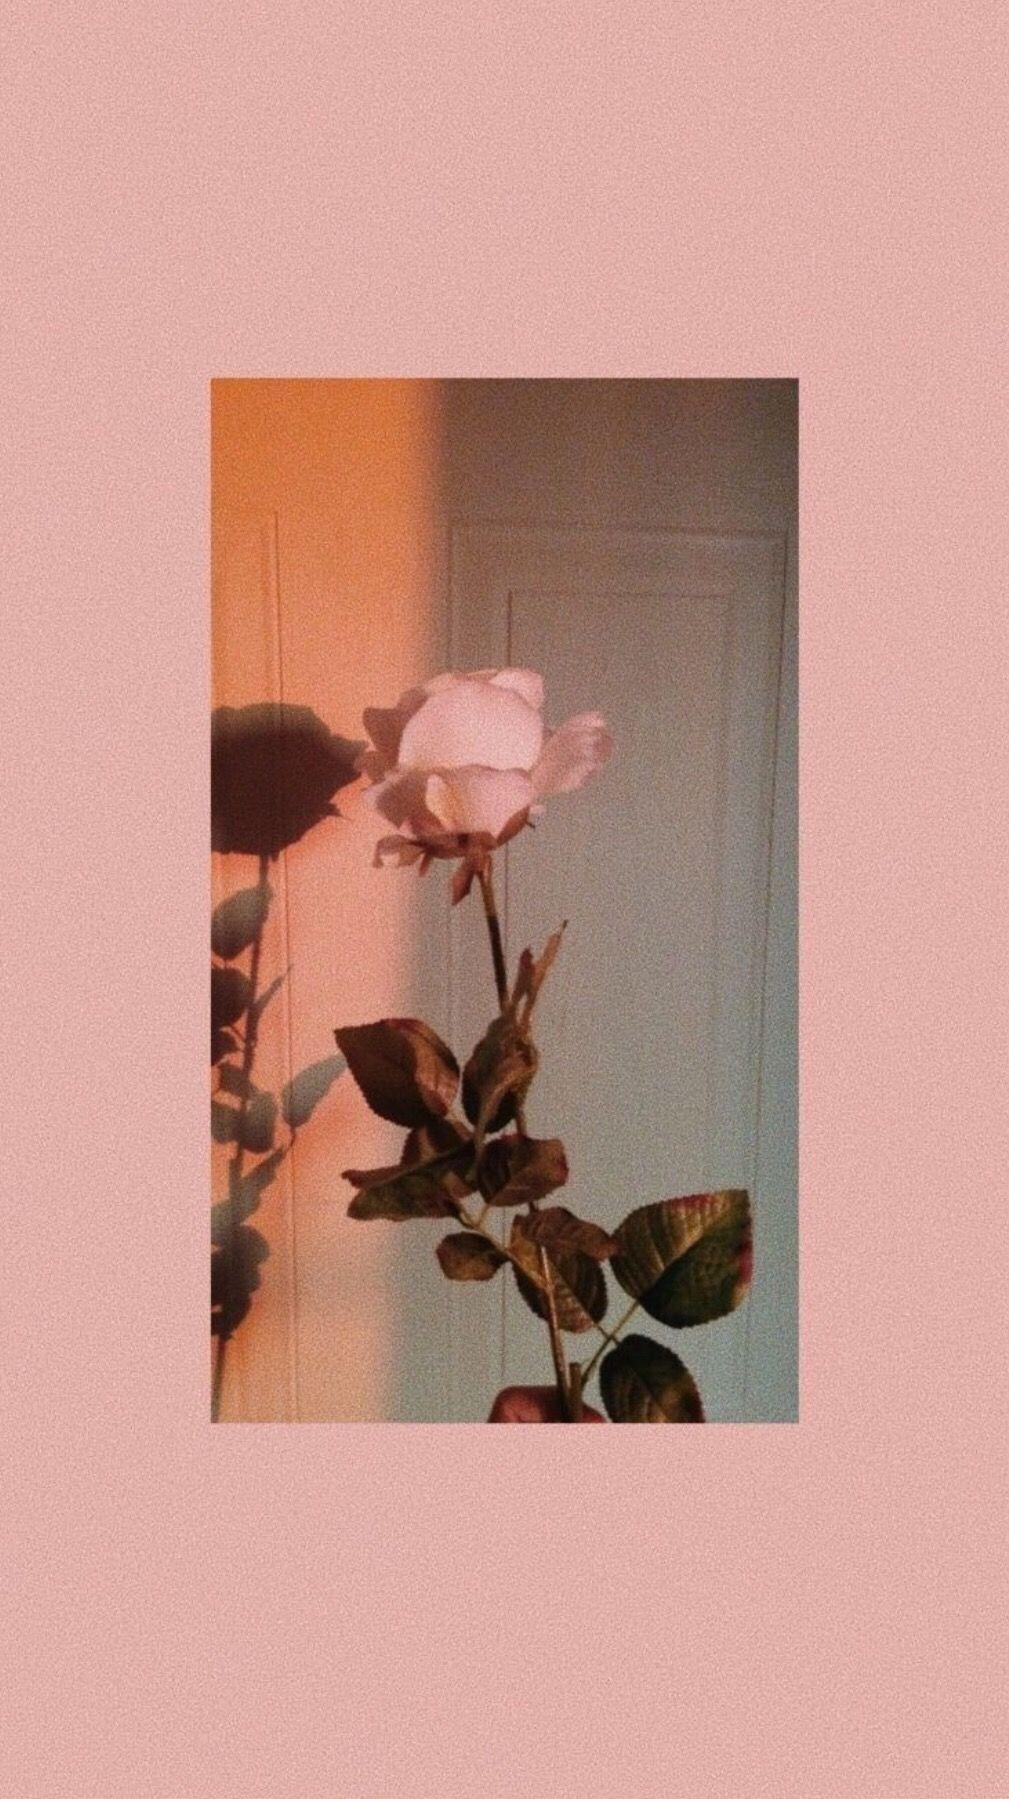 tumblr #wallpaper #rose Wallpaper Rose For iPhone Free